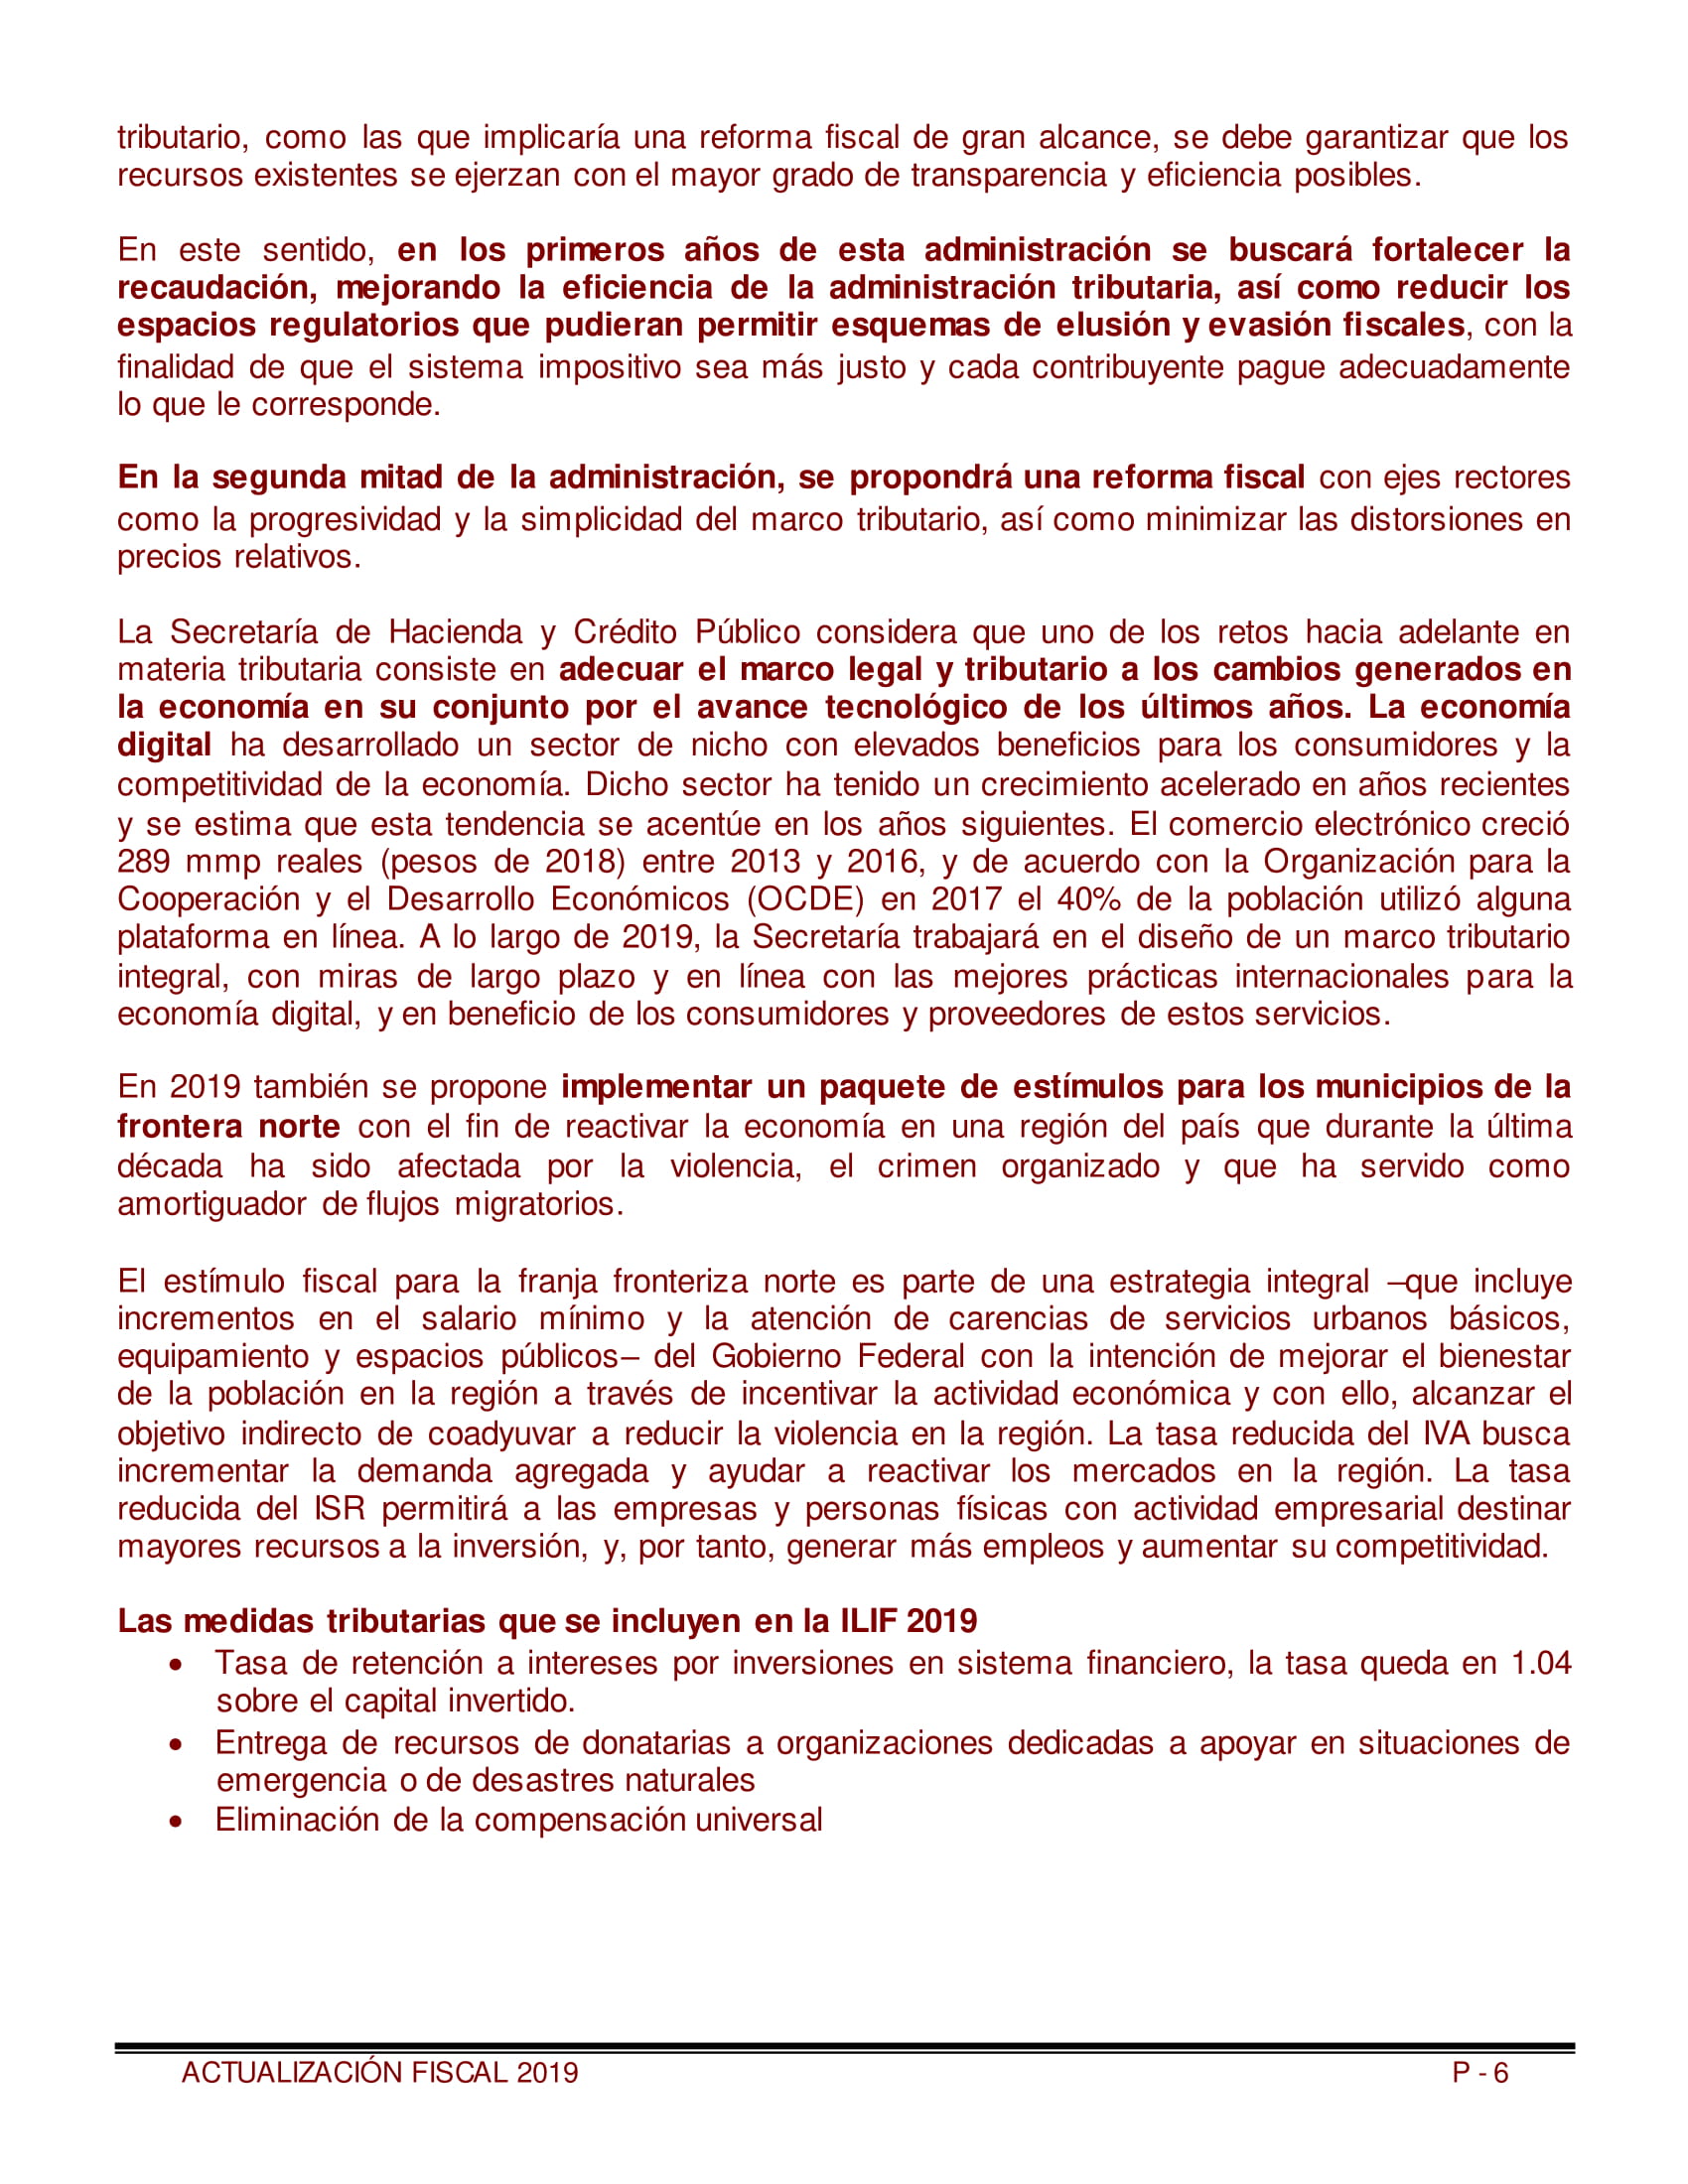 Libro_Actualizacion_Fiscal_2019-06